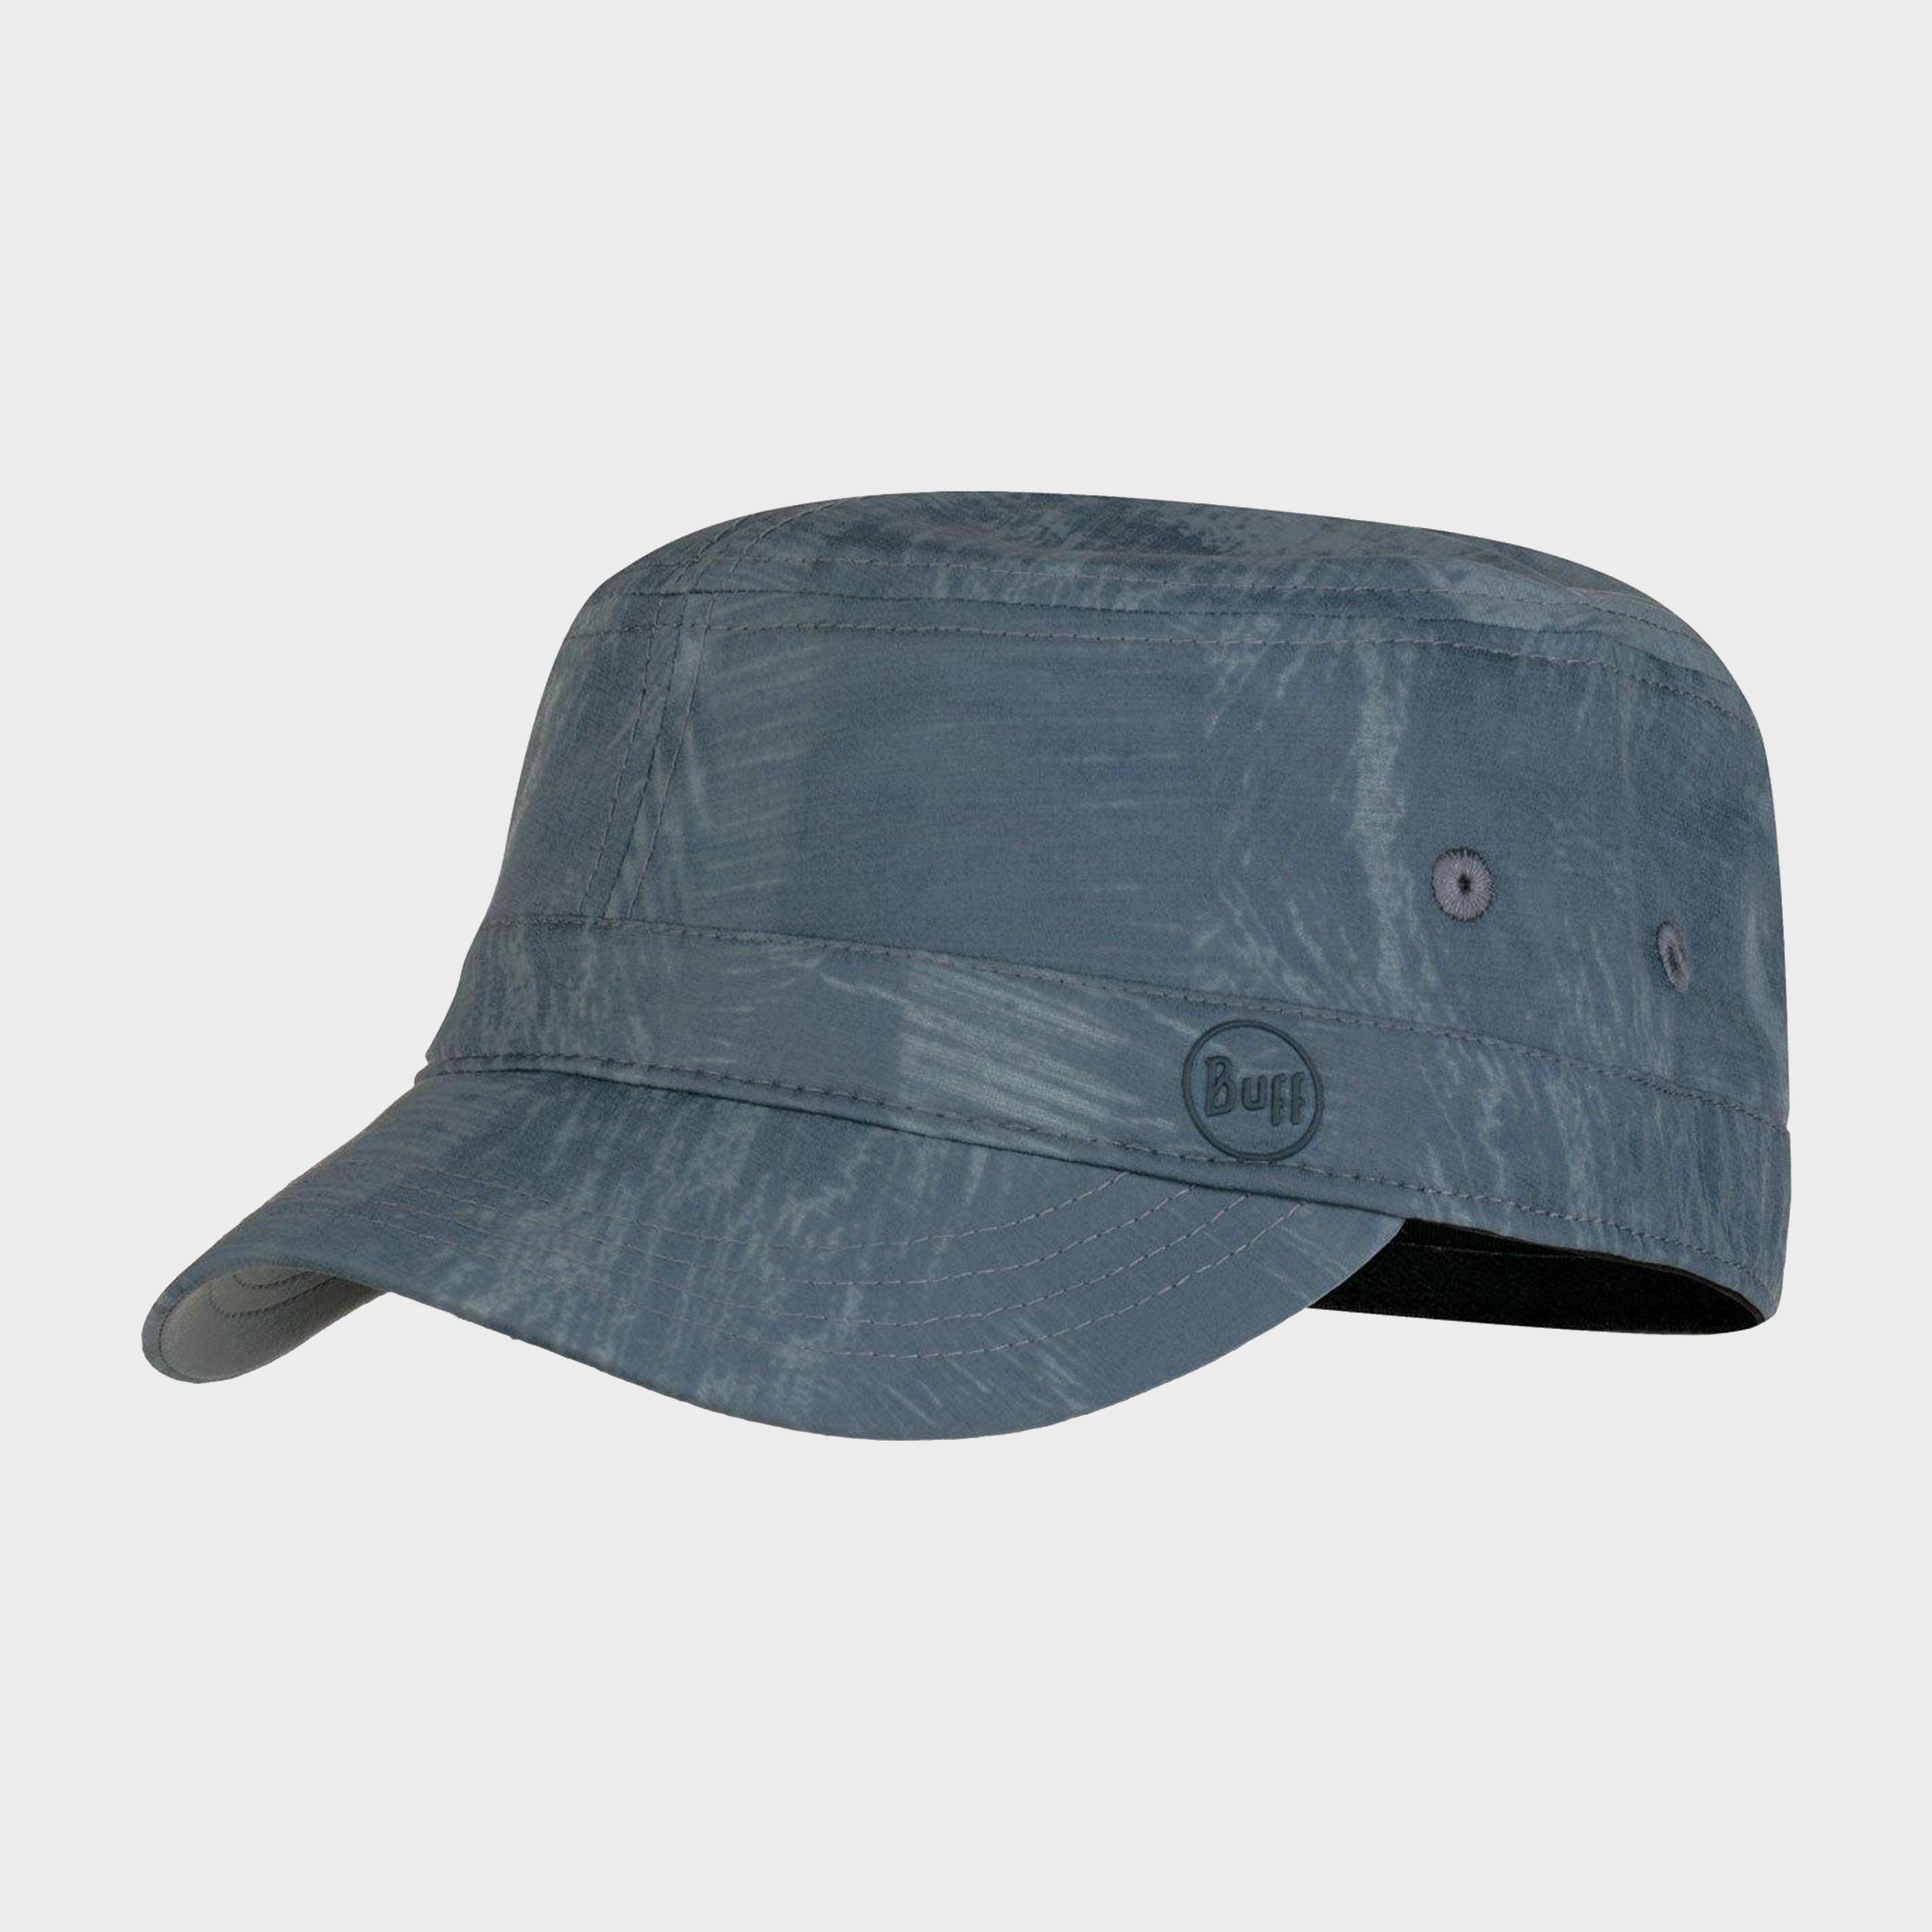 Buff Rinmann Military Cap - Grey/cap  Grey/cap